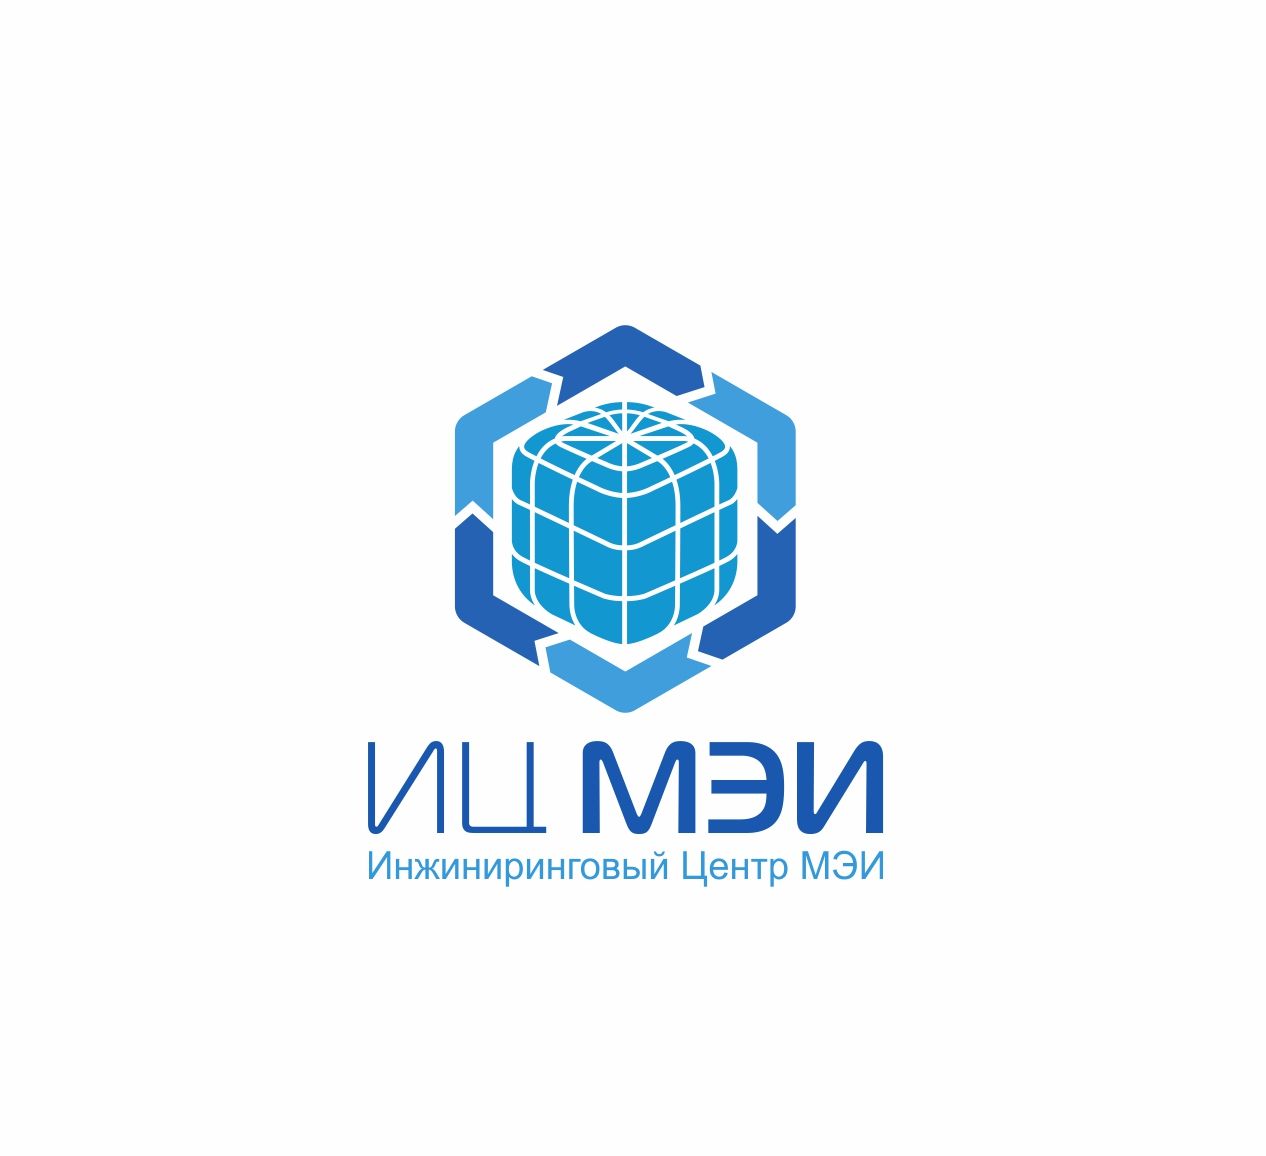 Логотип для ИЦ МЭИ / EC MEI (Инжиниринговый Центр МЭИ) - дизайнер anstep